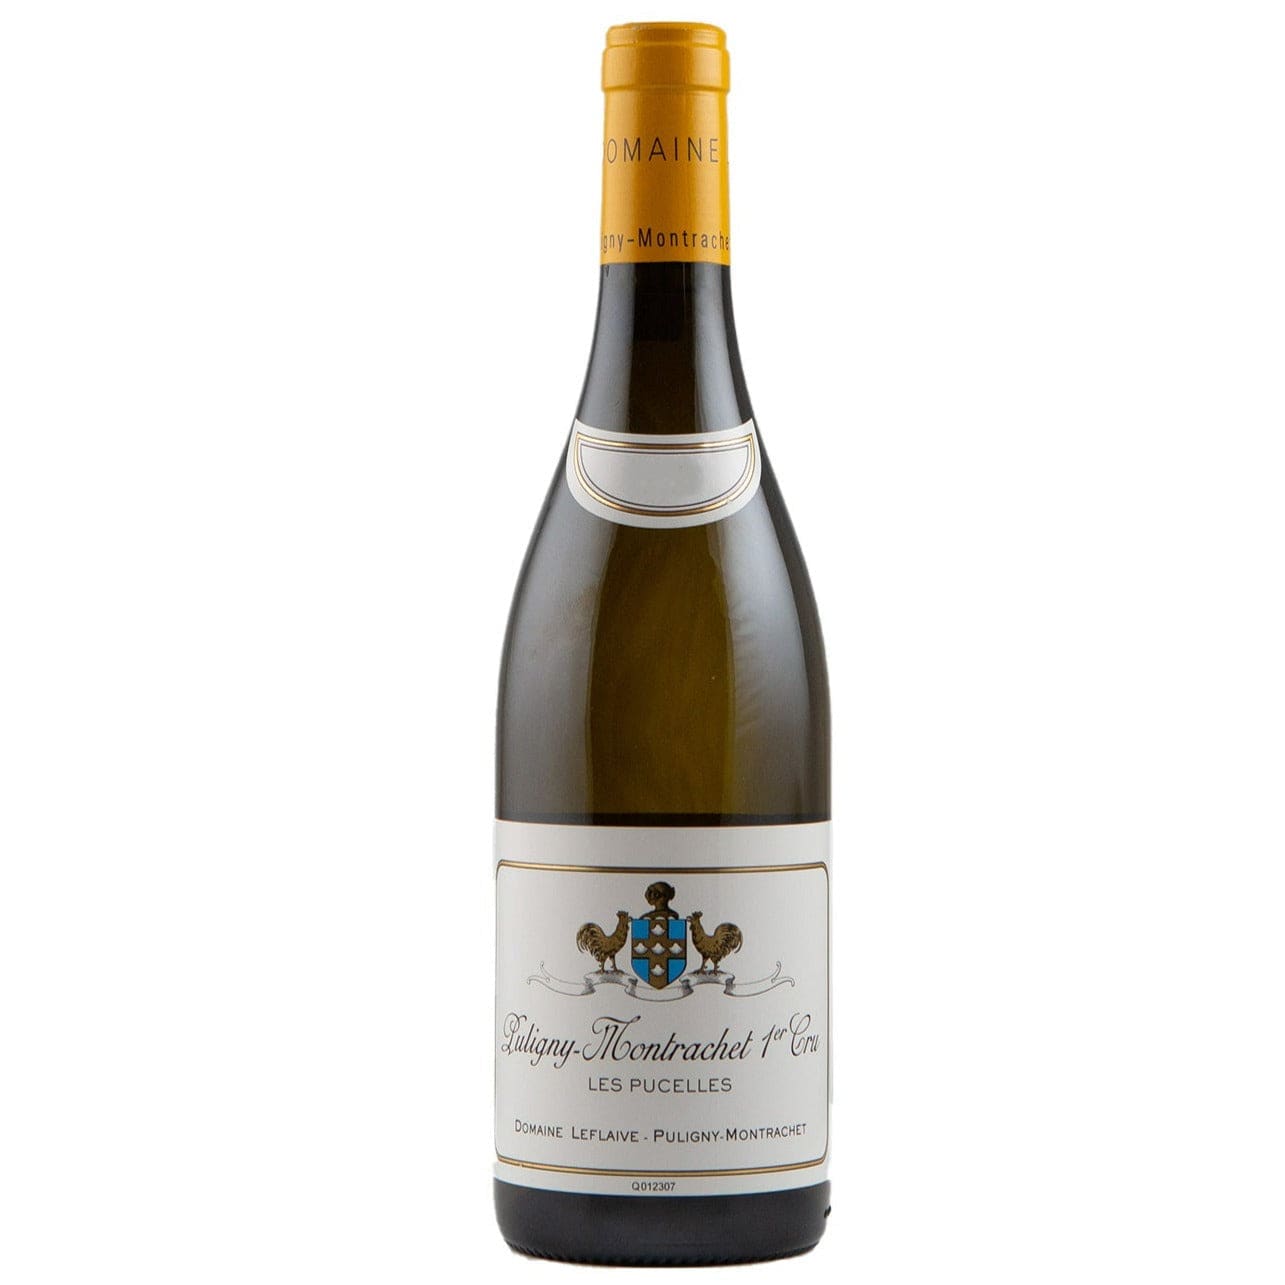 Single bottle of White wine Dom. Leflaive, Les Pucelles Premier Cru, Puligny-Montrachet, 2020 100% Chardonnay